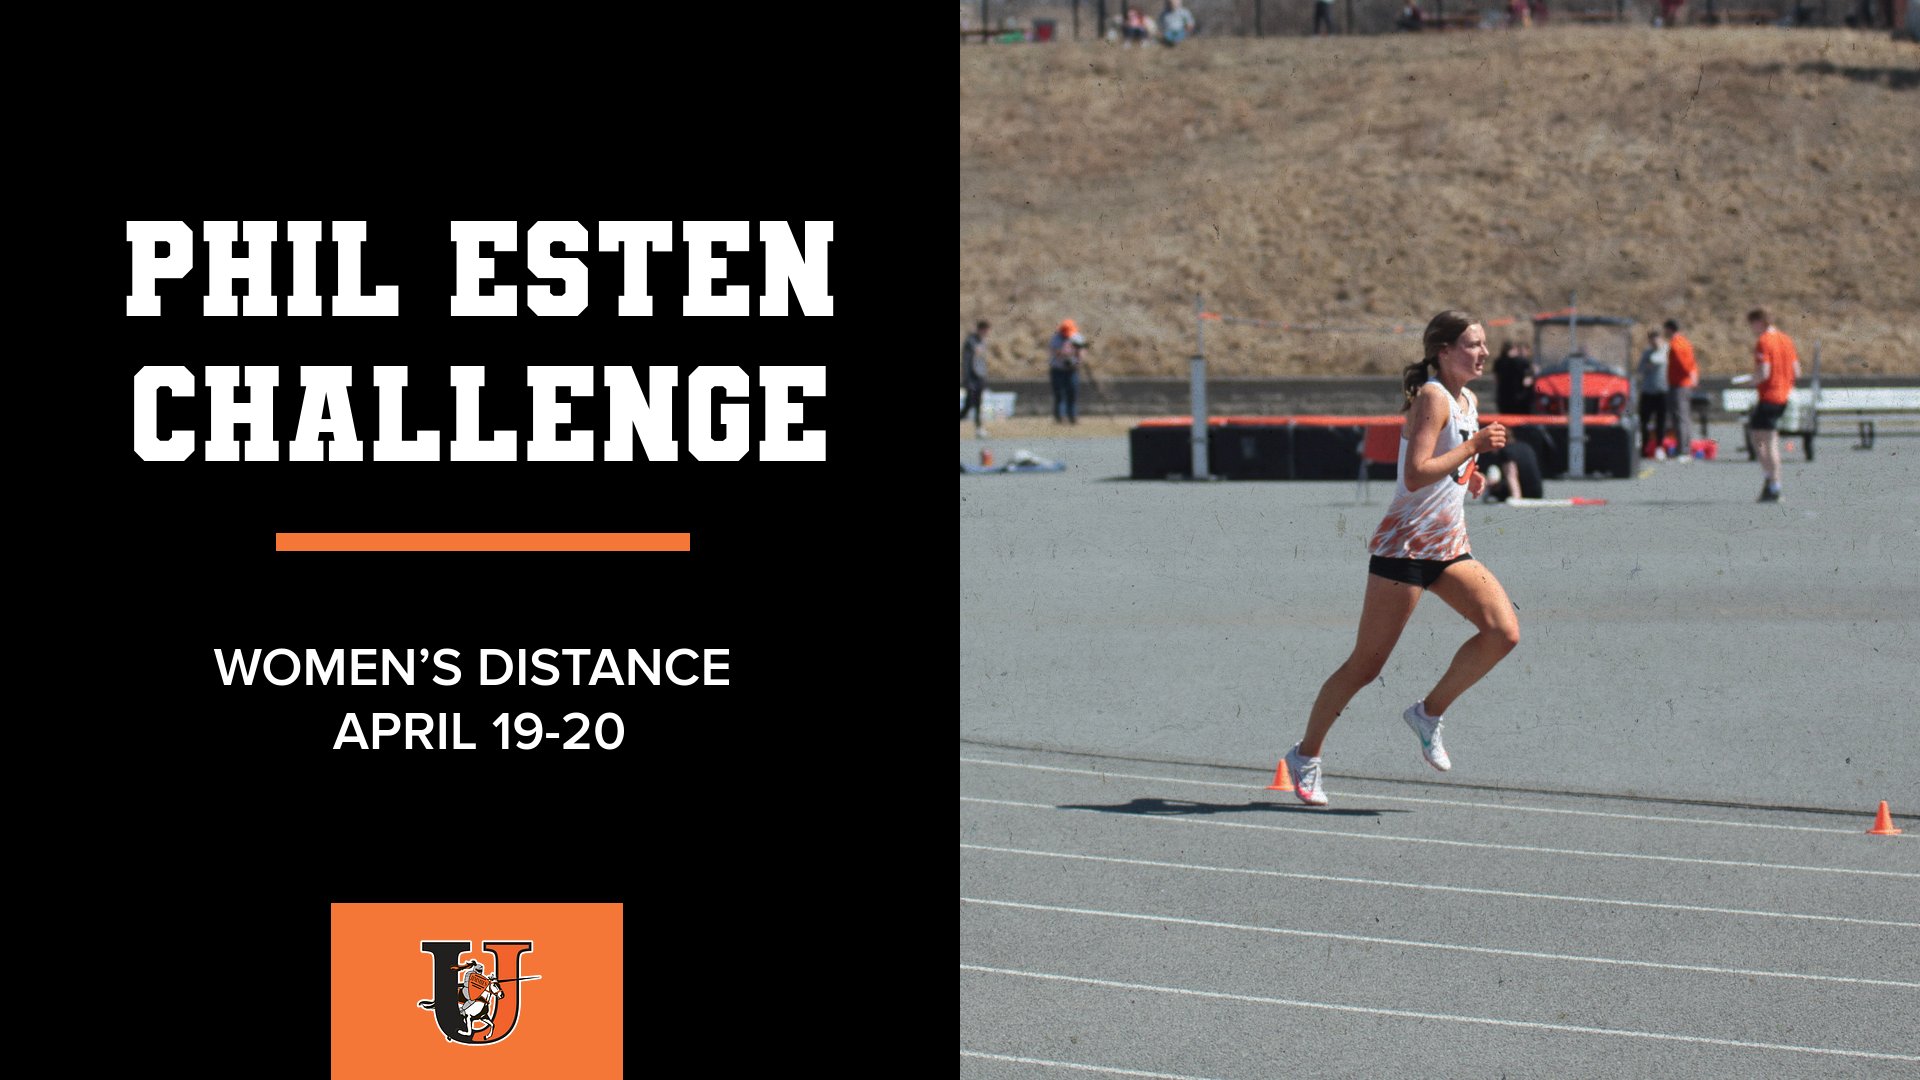 Women's distance runs at Phil Esten Challenge